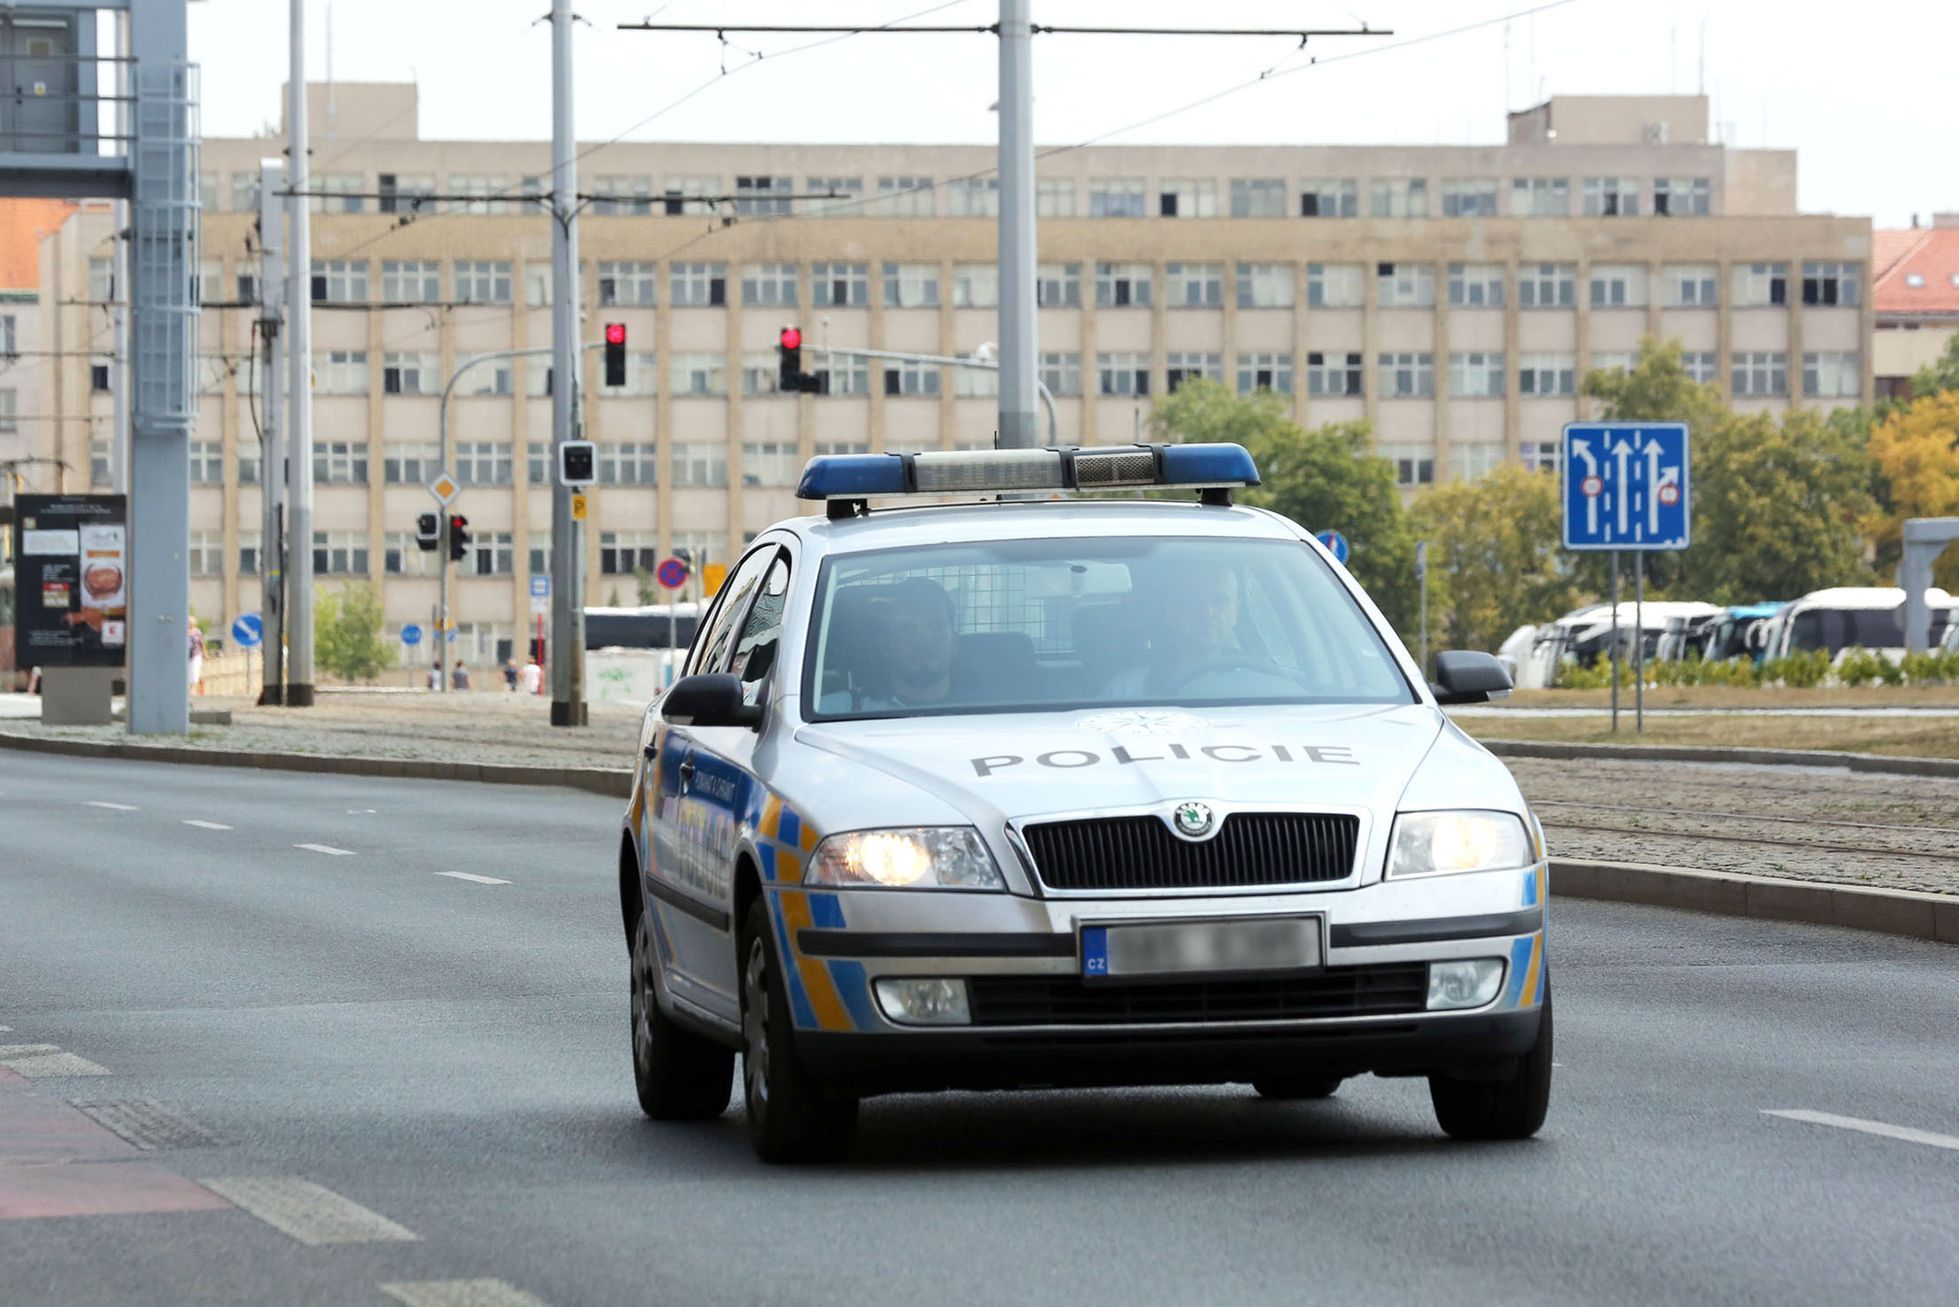 Policie ČR / Státní policie / Policejní auto / Policisté / Policejní hlídka / Ilustrační foto / Praha / Léto / 2018 / 1